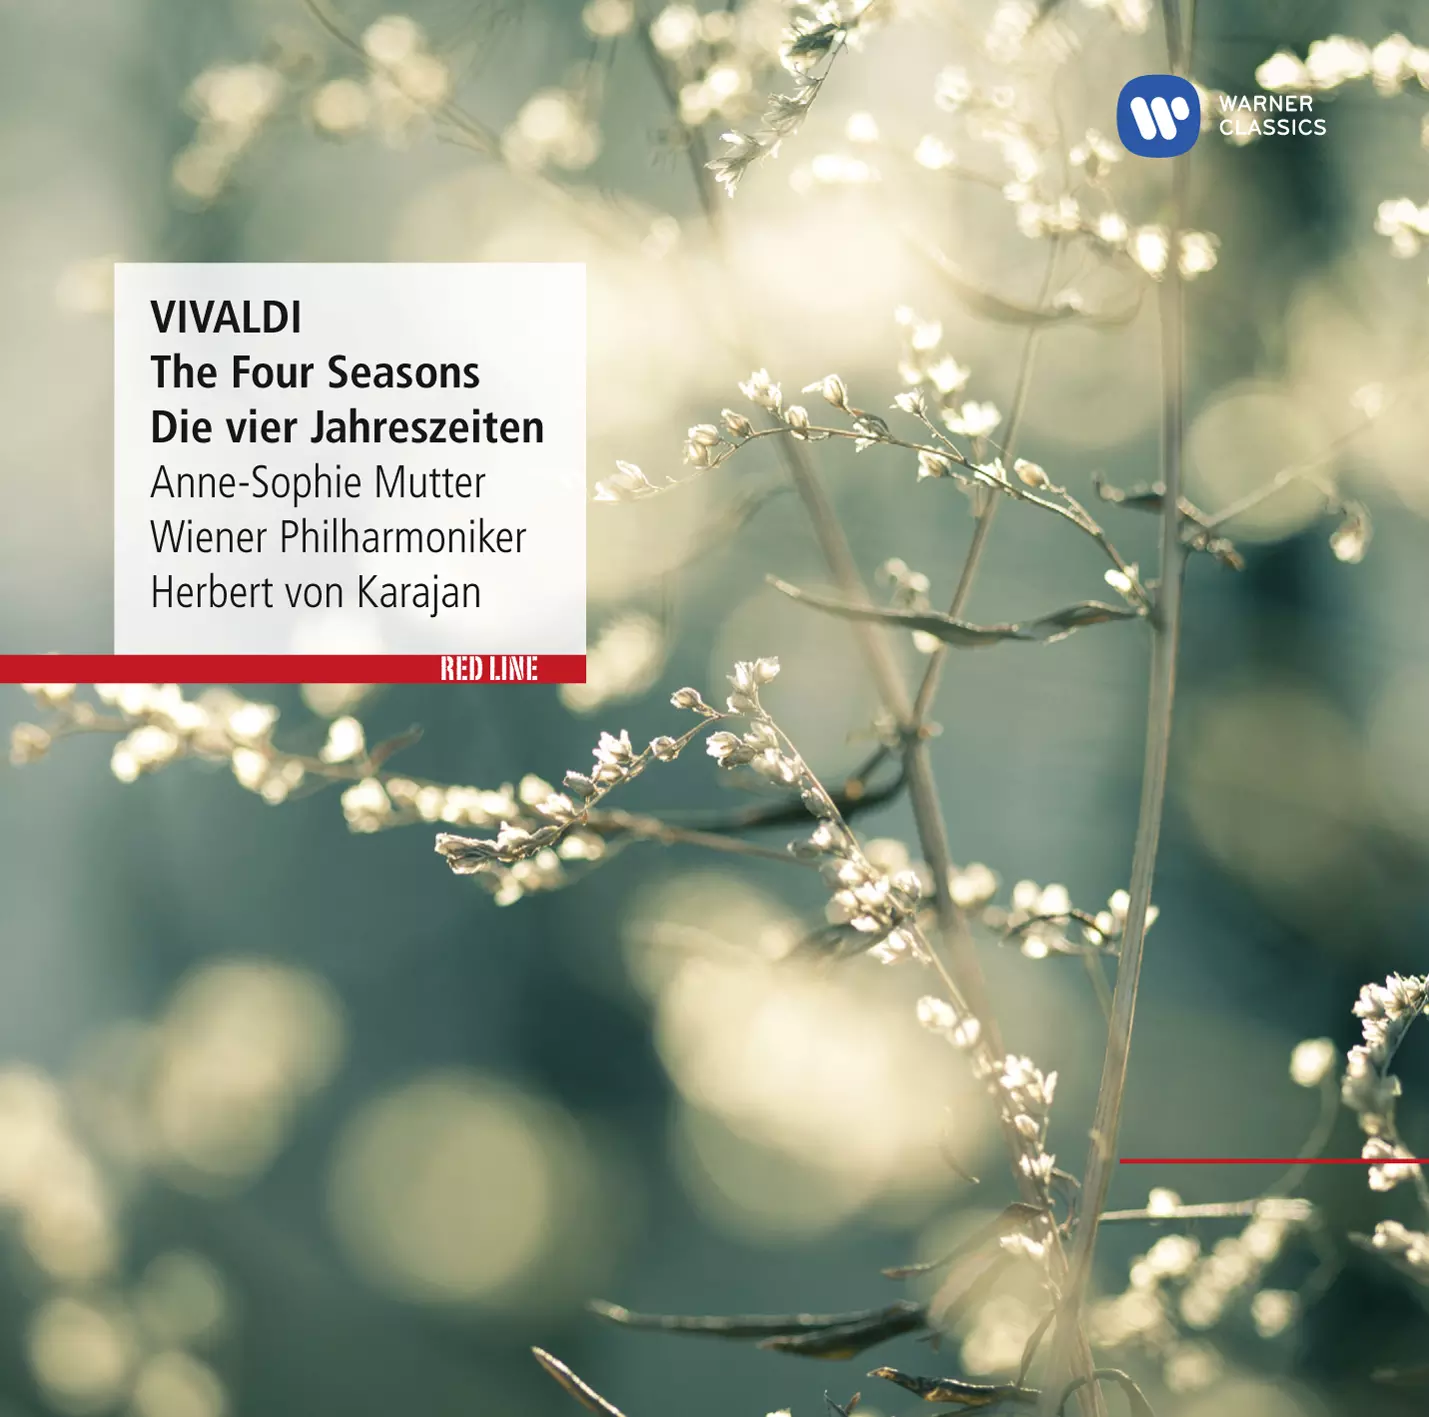 Vivaldi: The Four Seasons - Die vier Jahreszeiten